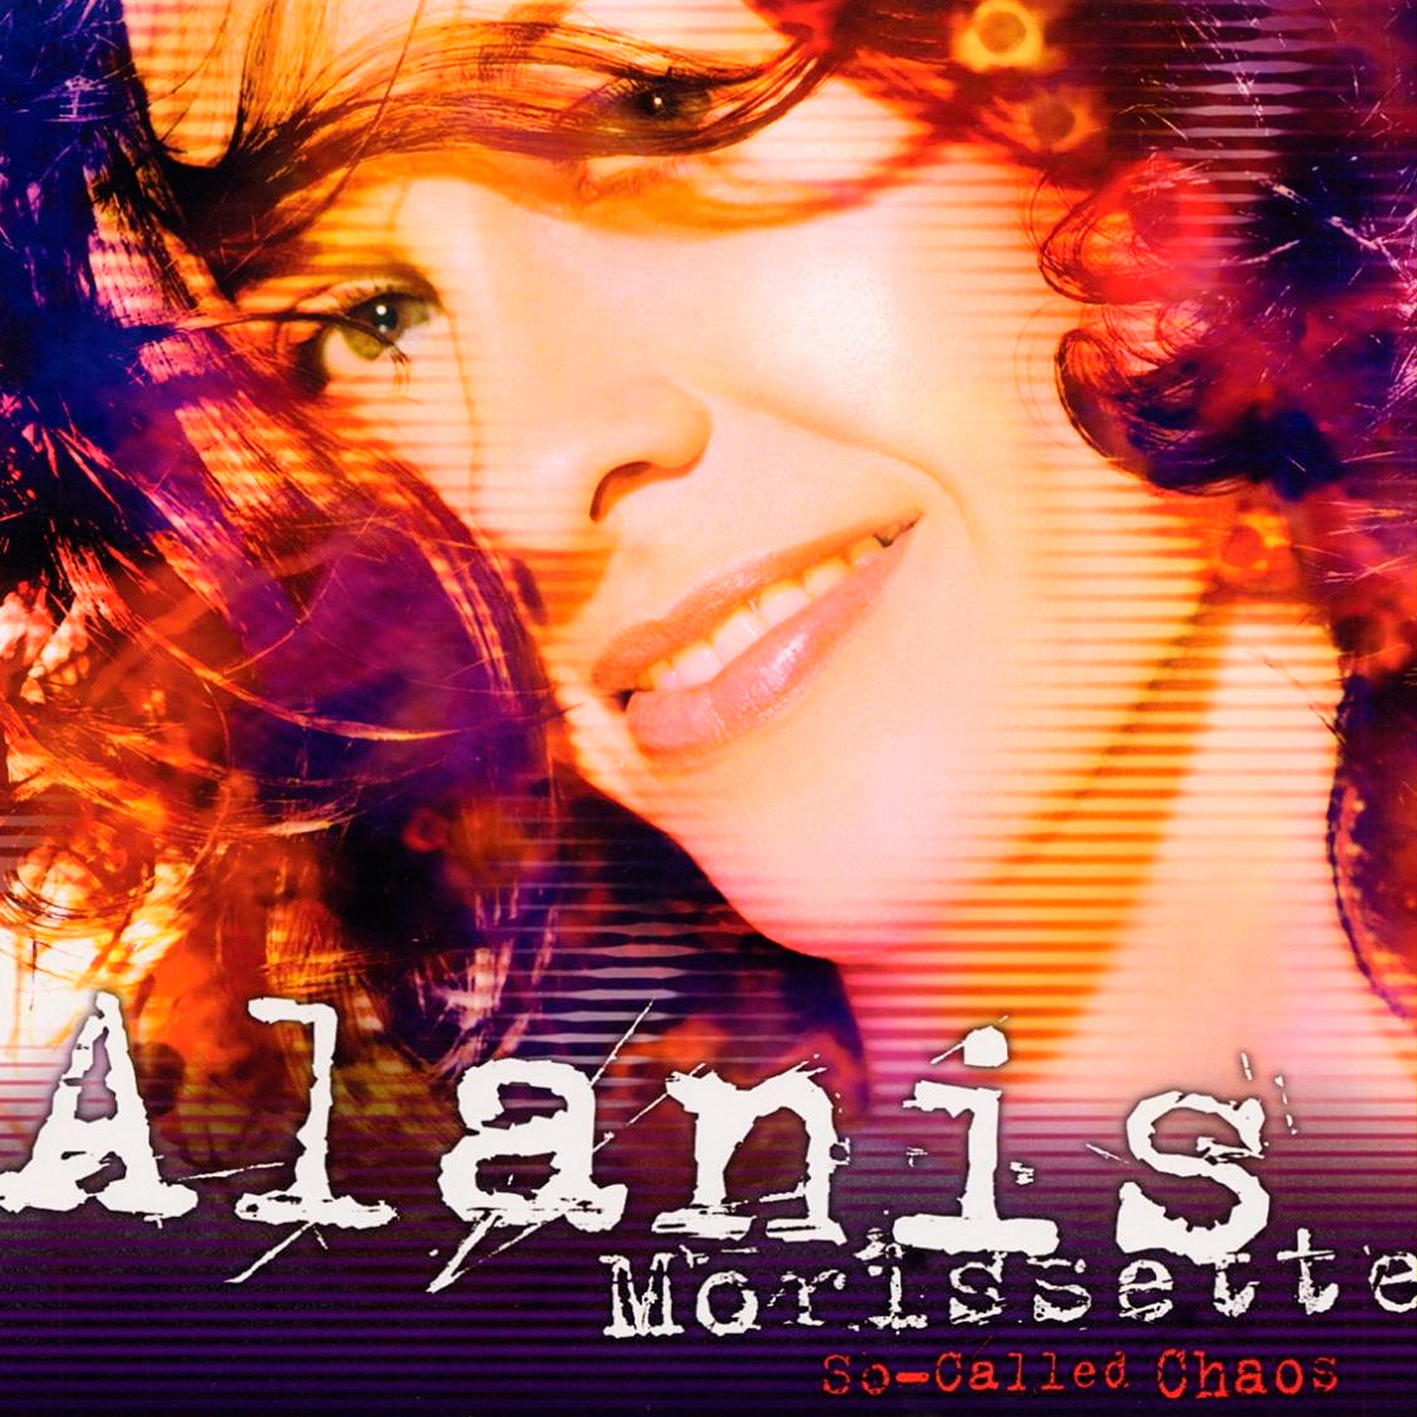 Alanis Morissette - So-Called Chaos (2004/2015) [HDTracks FLAC 24bit/96kHz]